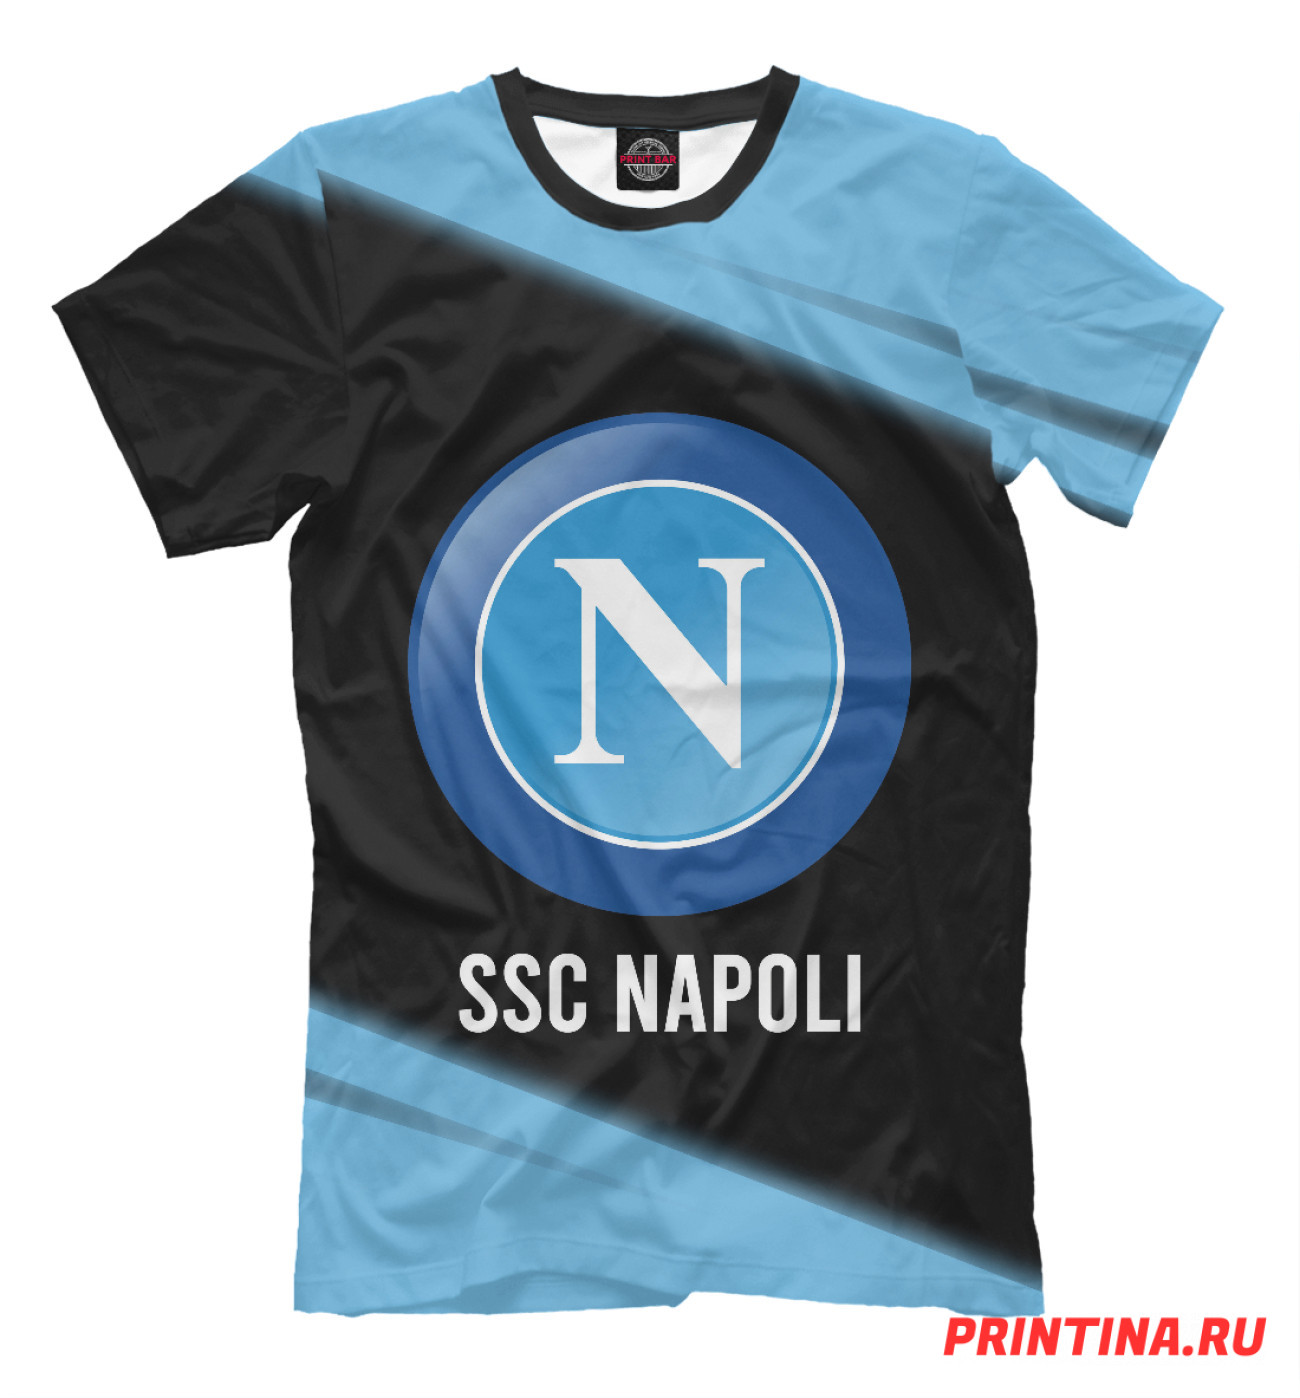 Мужская Футболка SSC Napoli / Наполи, артикул: NPL-351172-fut-2